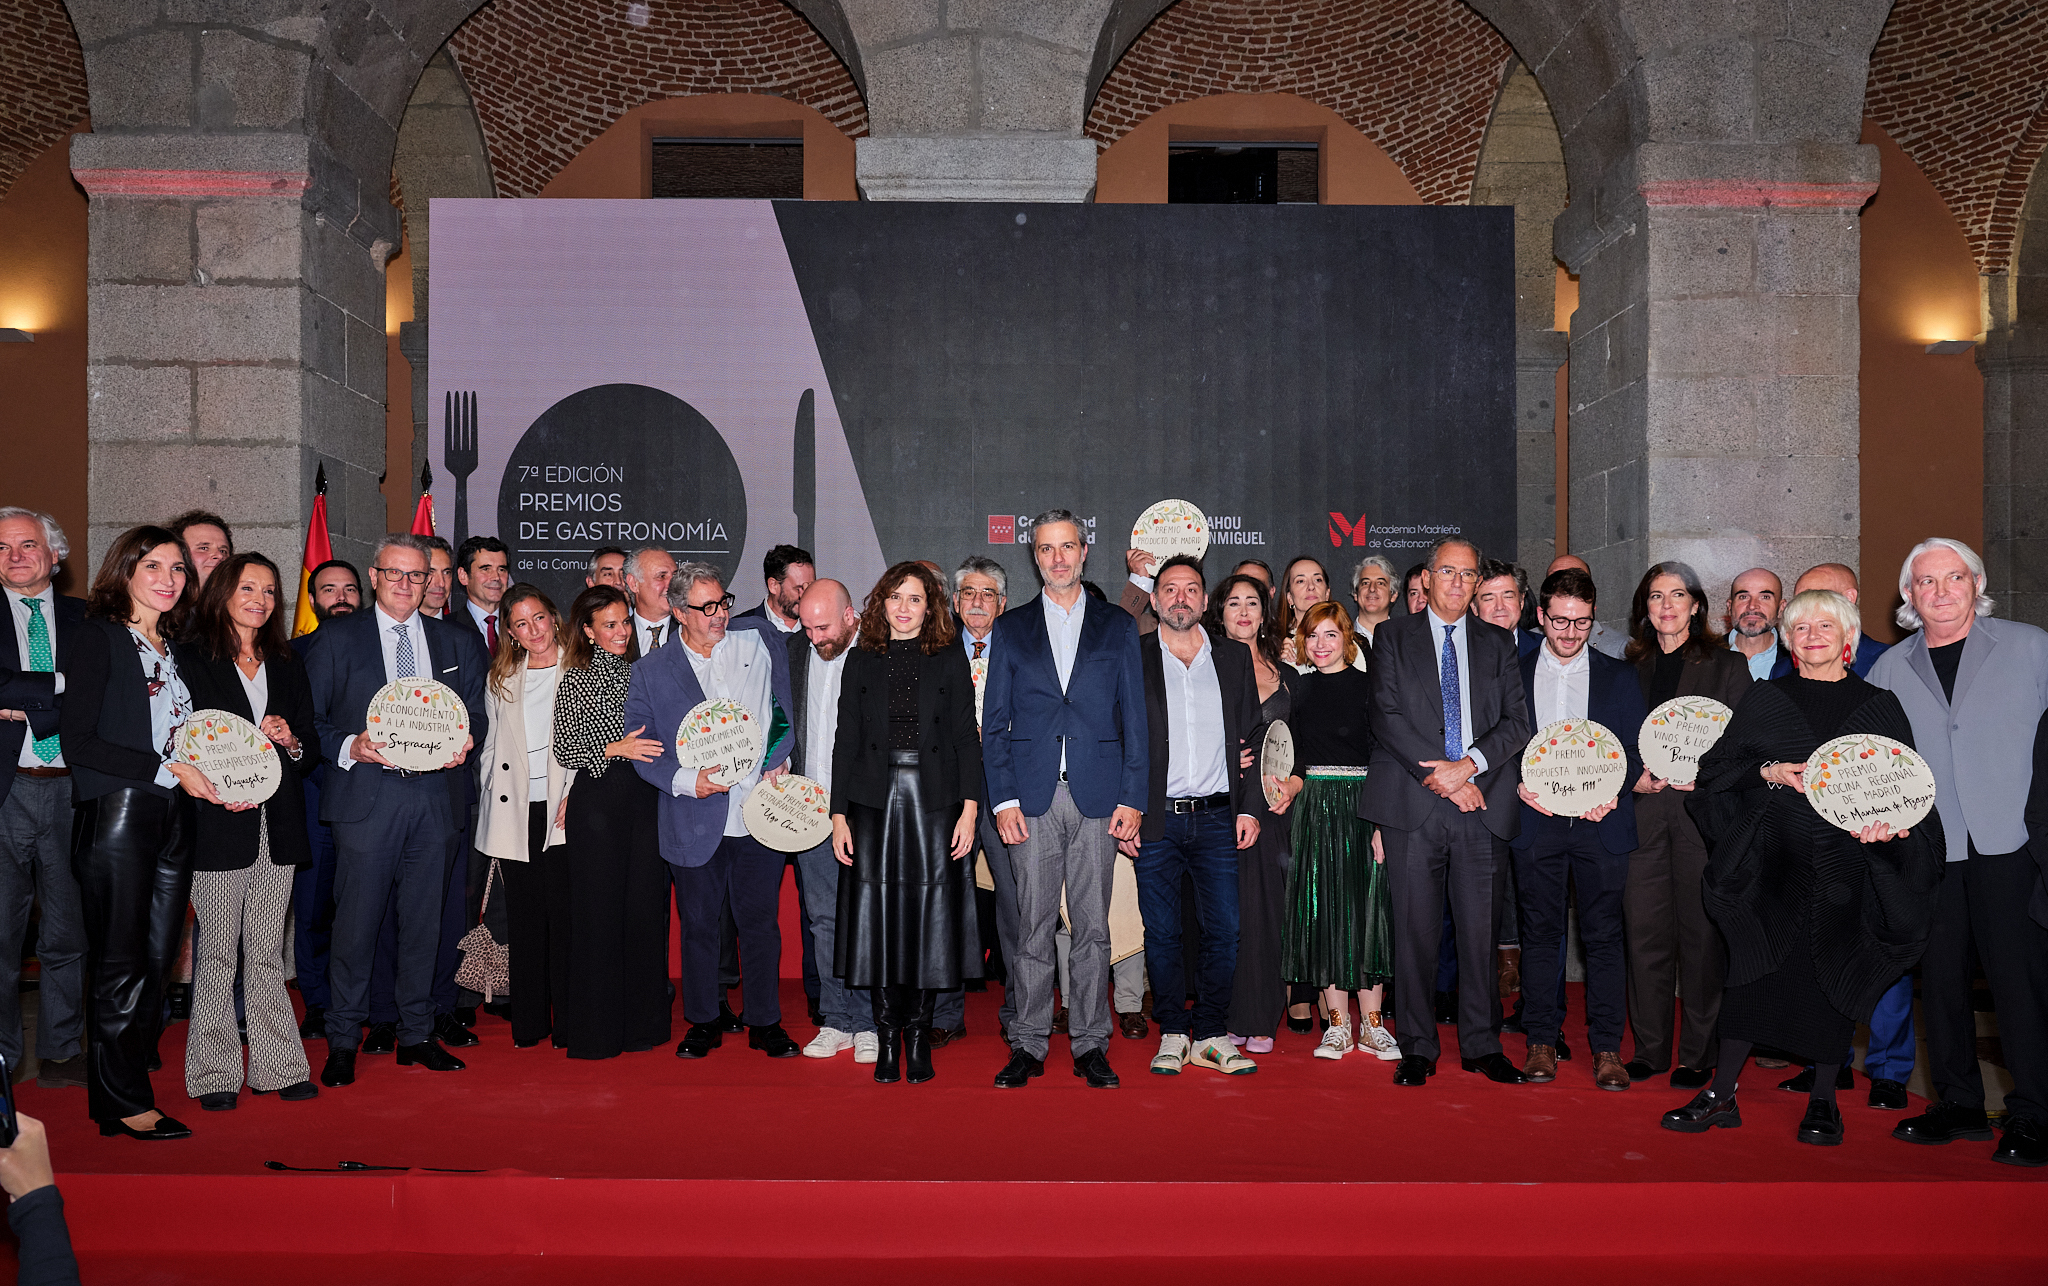 Su primer acto institucional: Premios de Gastronomía de la Comunidad de Madrid